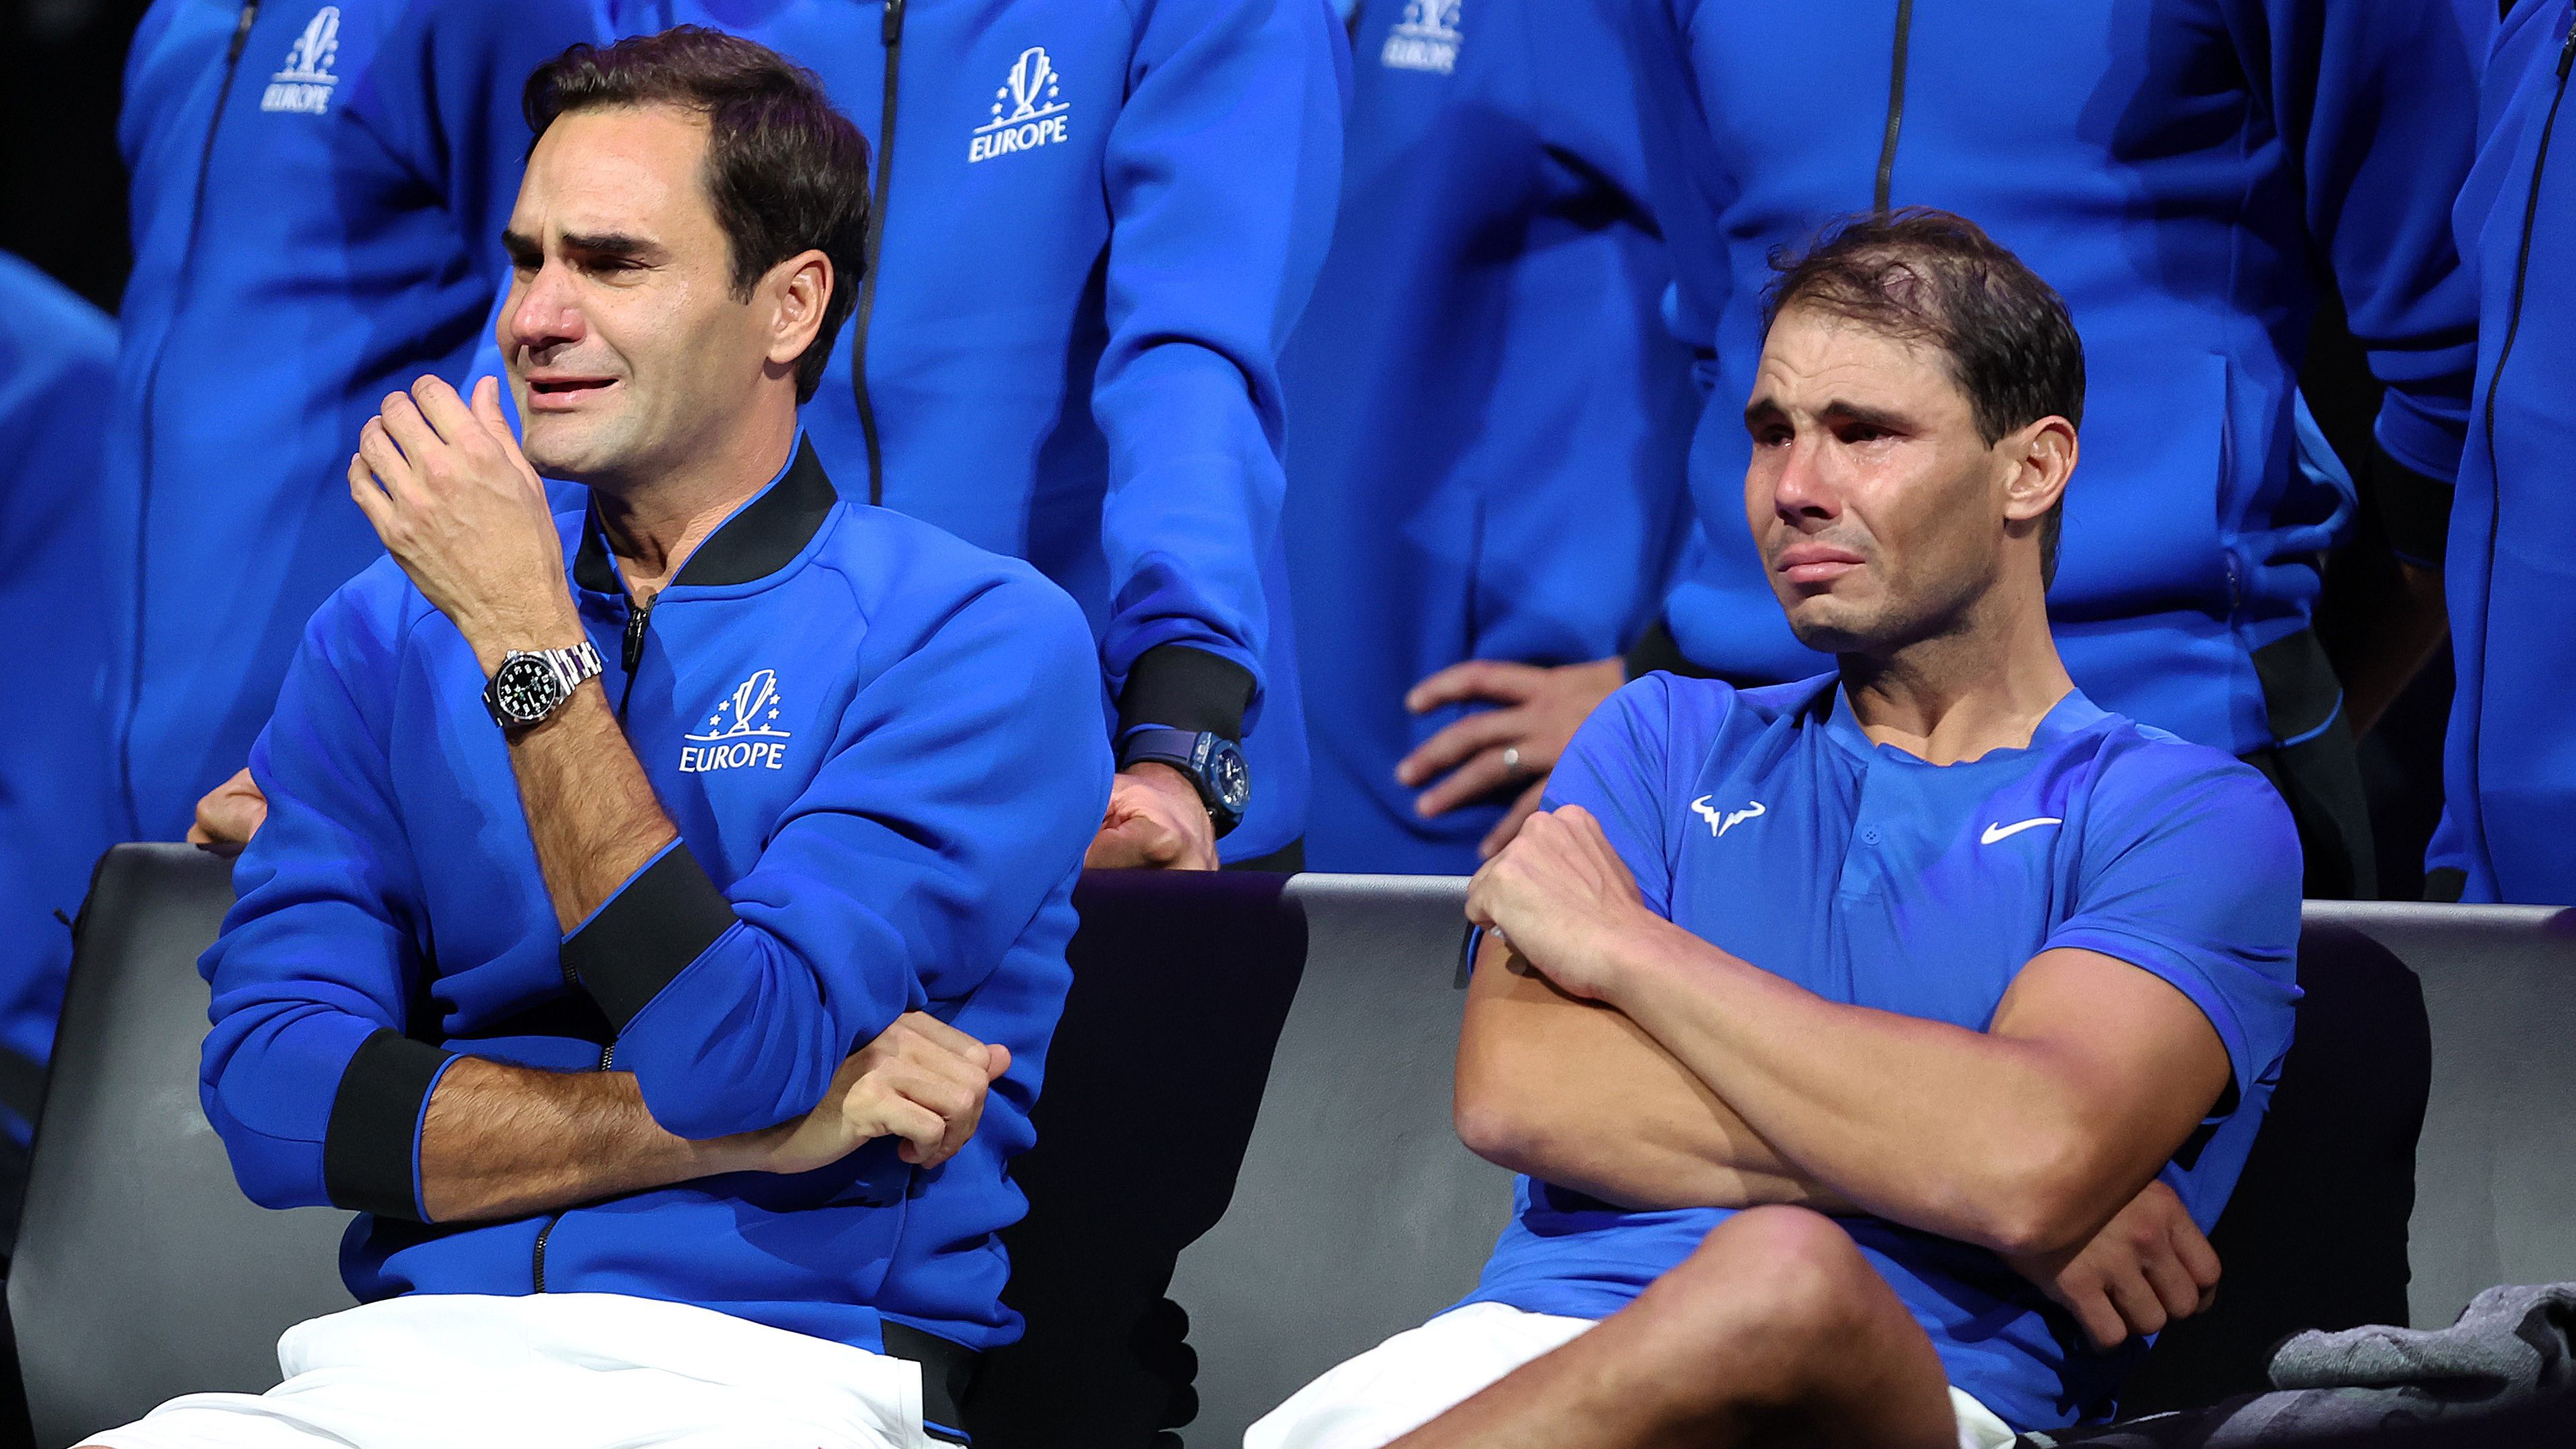 Egy férfinak sem kell szégyellnie, ha sír. Sőt: a férfikönnyek szexik (Federer és Nadal előbbi búcsúján, Fotó: GettyImages)